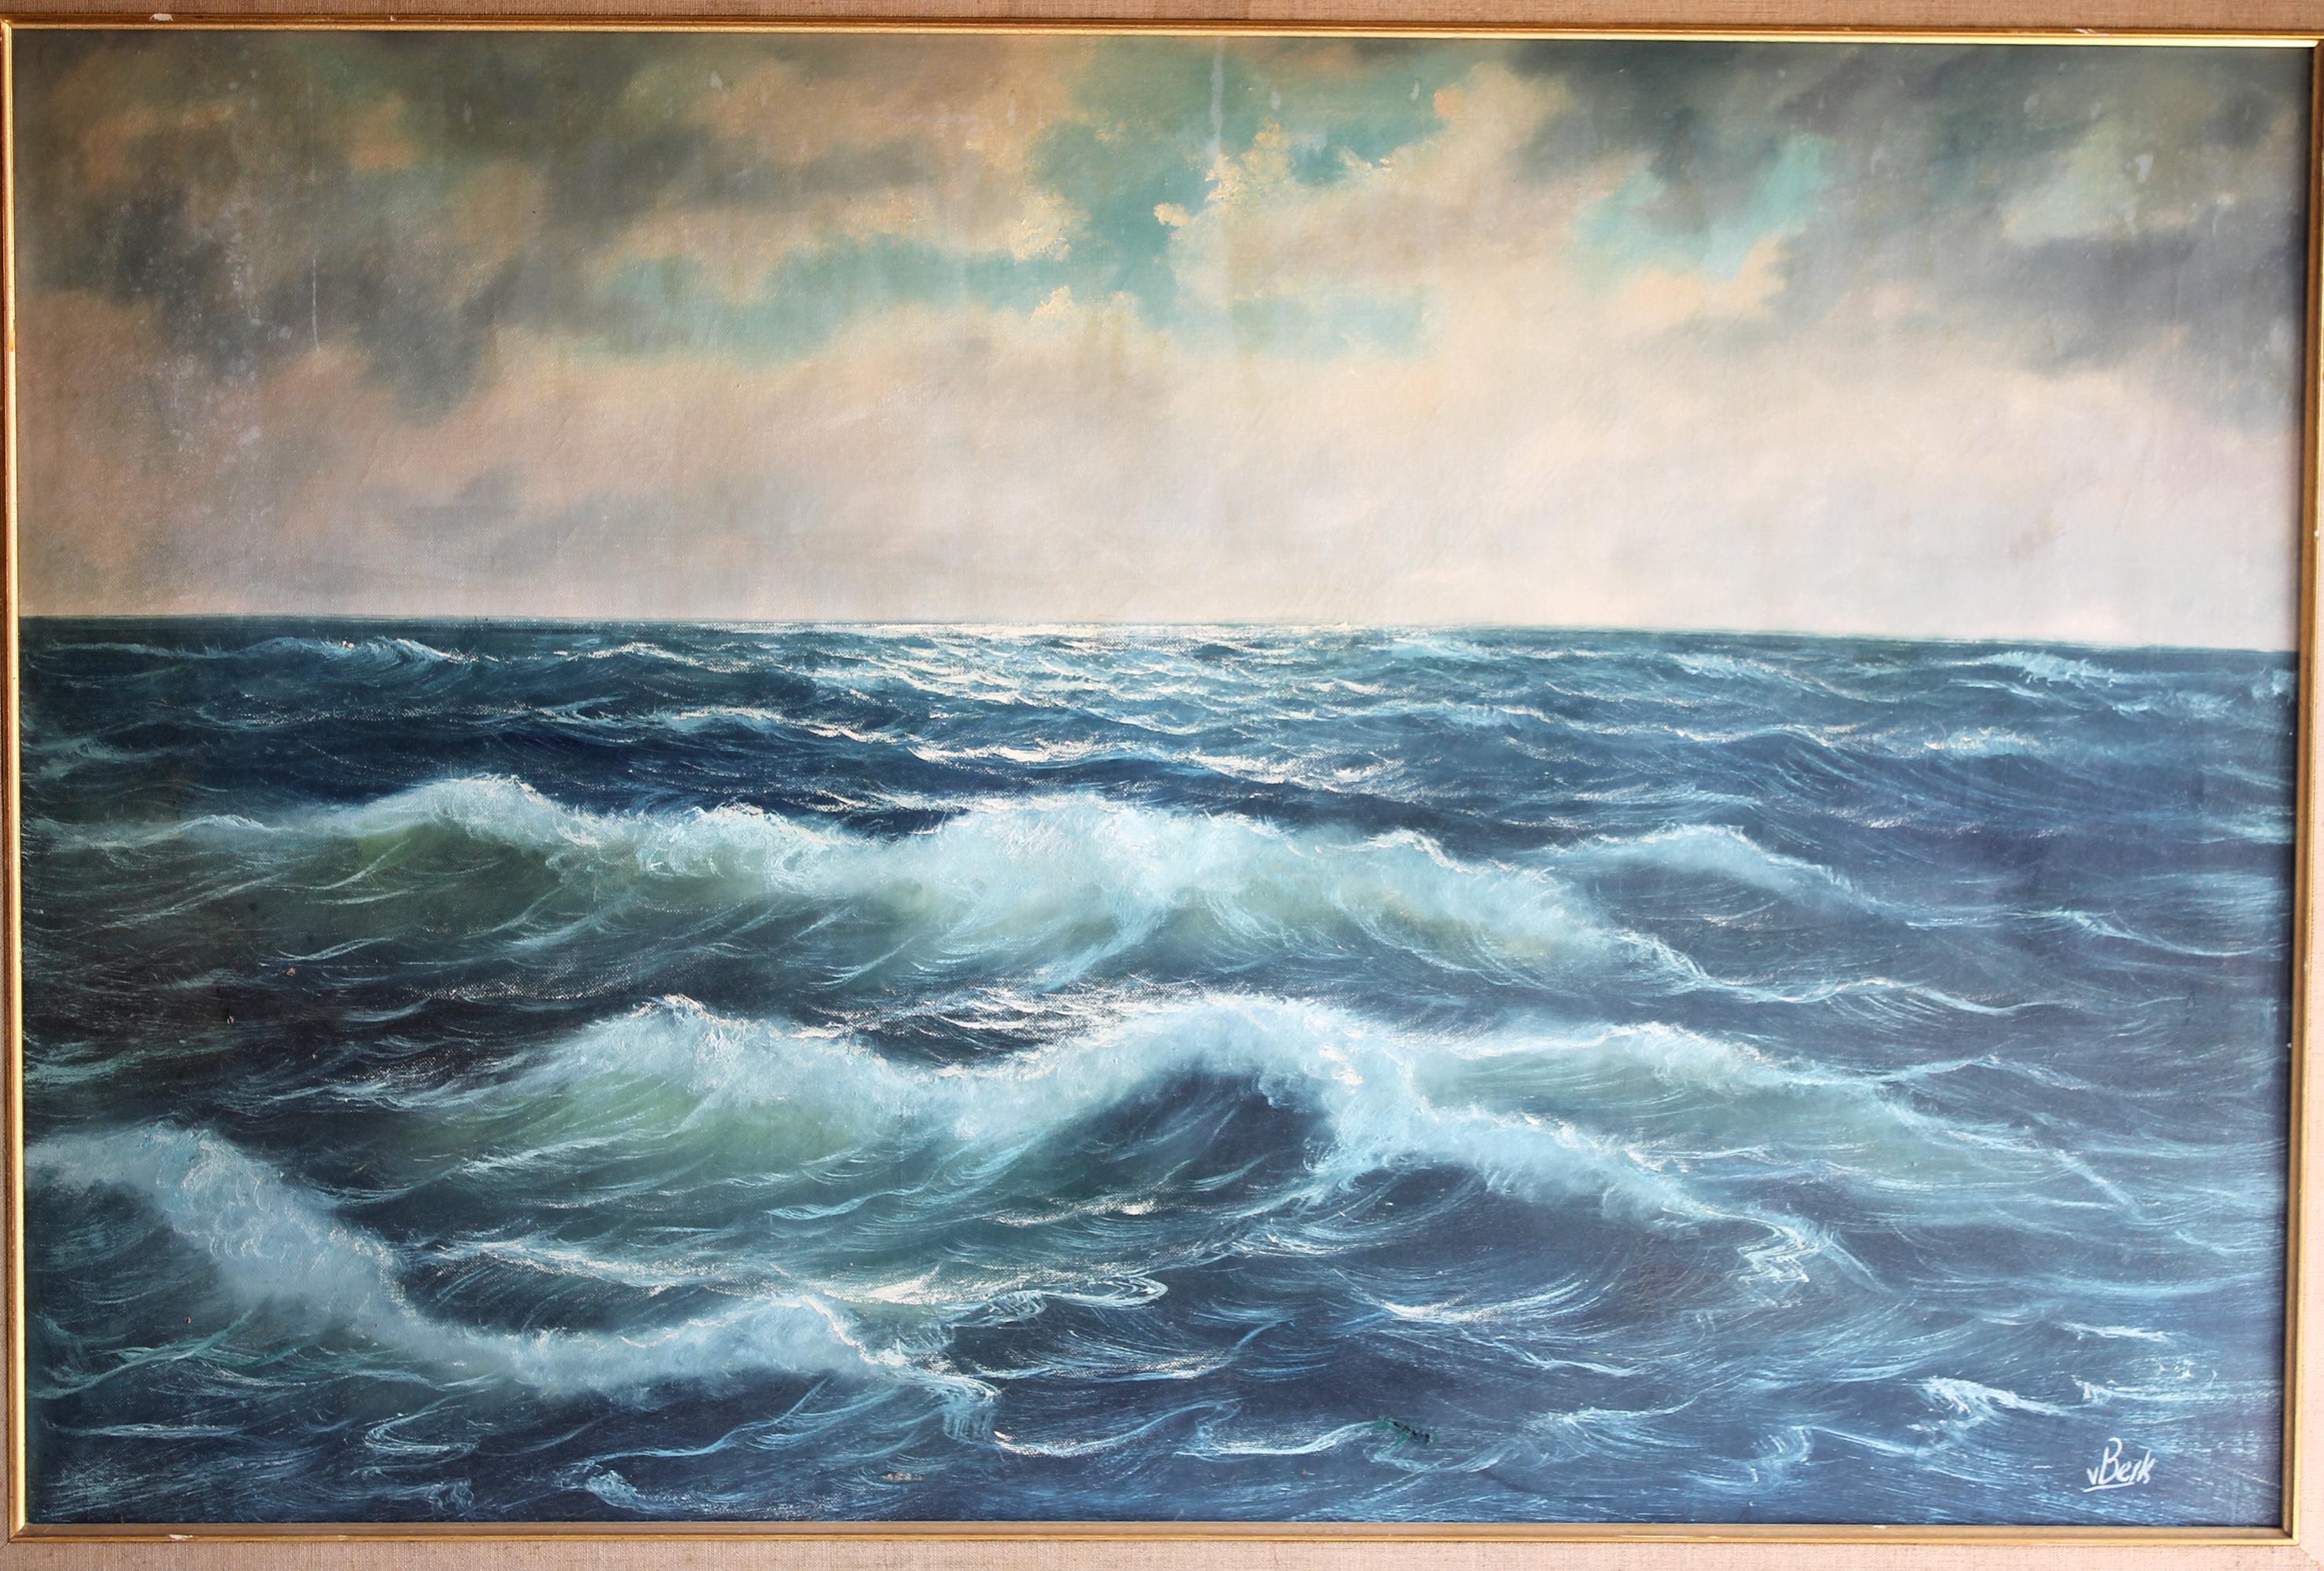 Vintage ocean oil painting in giltwood frame by German Artist V. Berk
Measures: 44